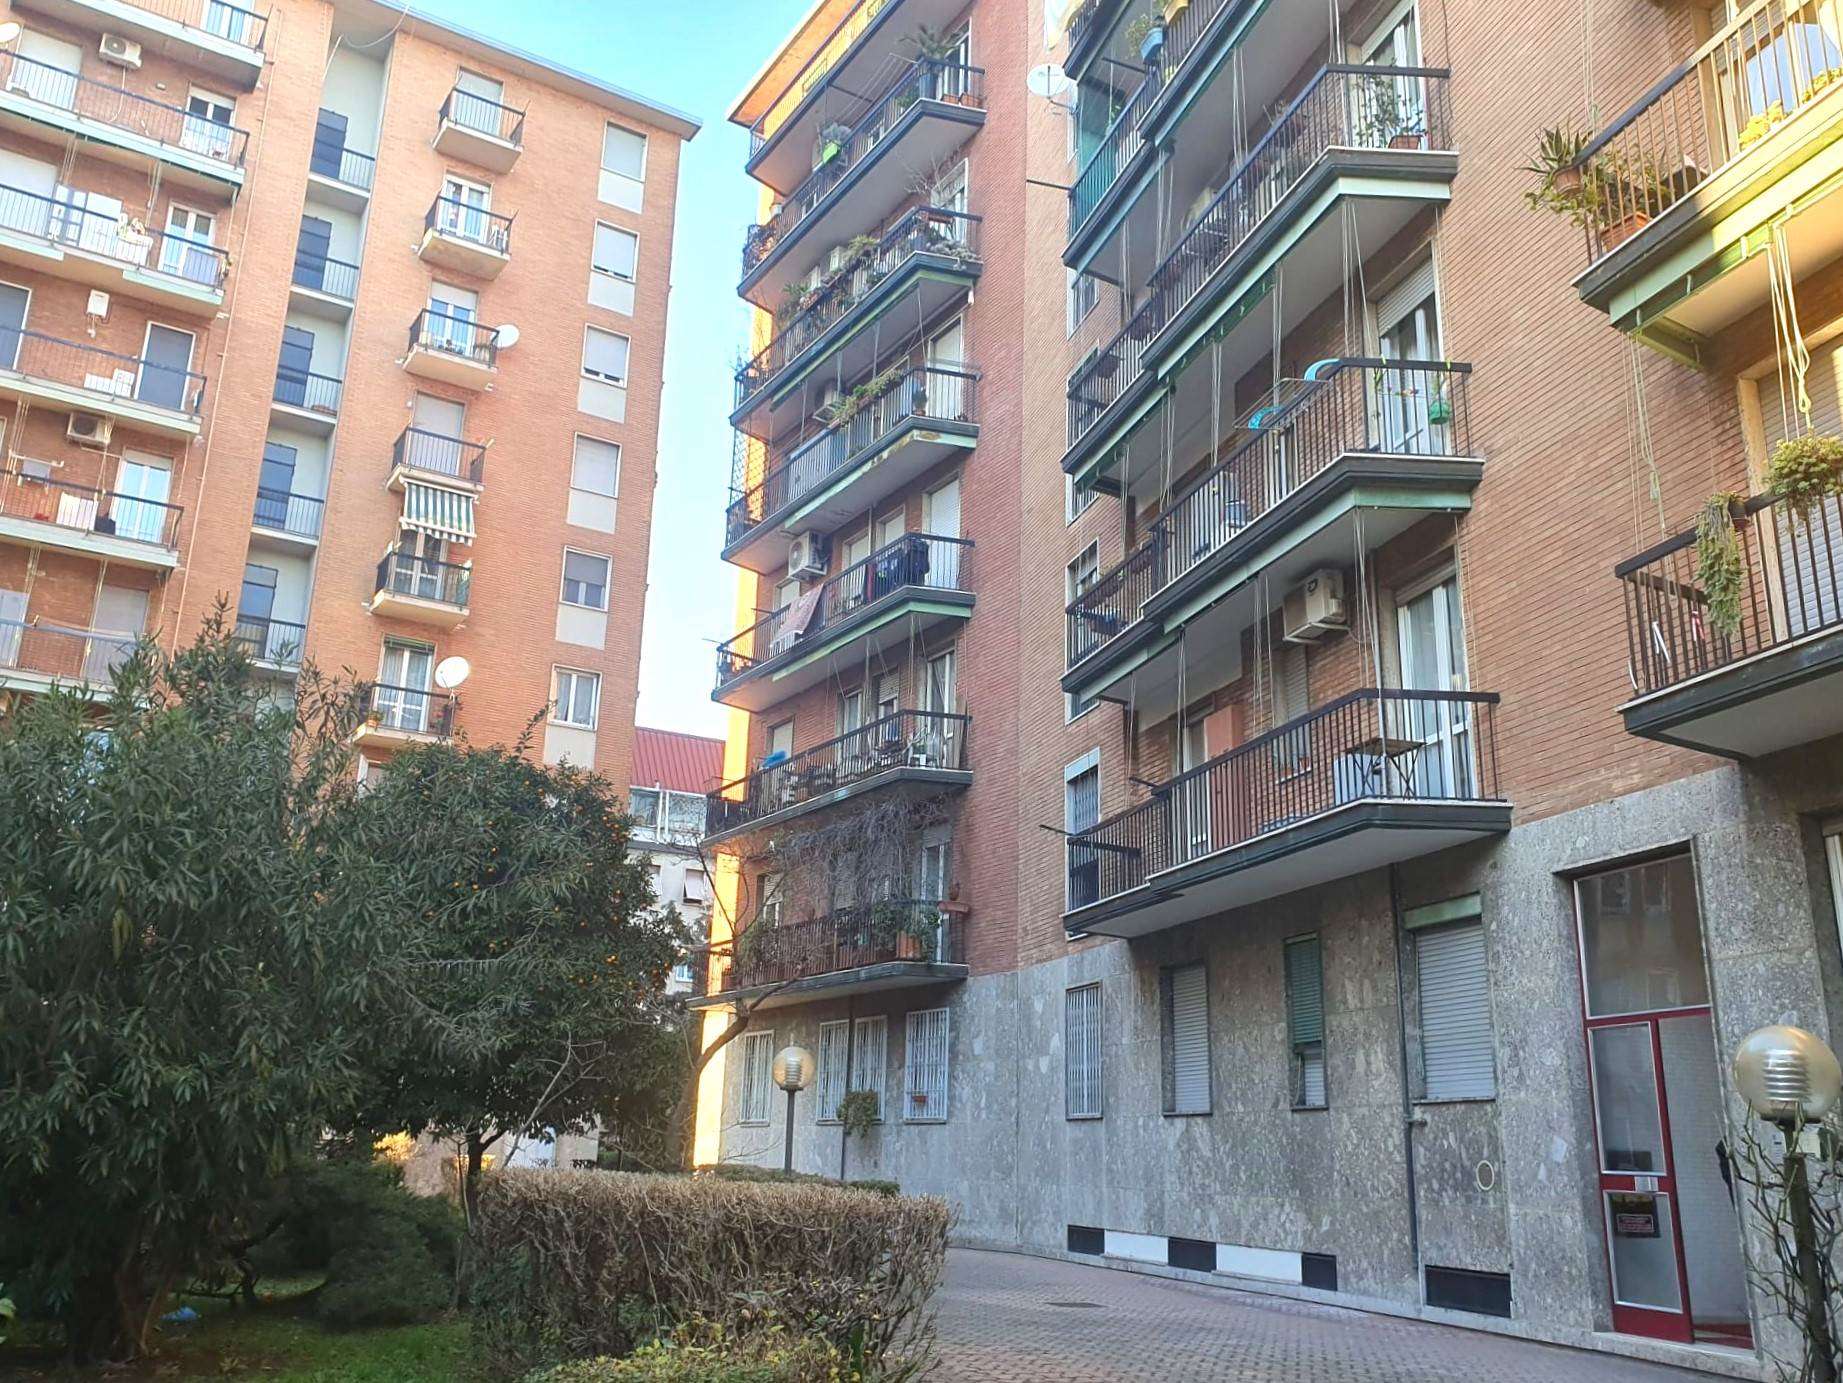 Rif 2/577 L'Abbruzzi Gruppo Immobiliare propone a Milano, zona Bovisa, via Benedetto Varchi, splendido appartamento sito al sesto ed ultimo piano che 